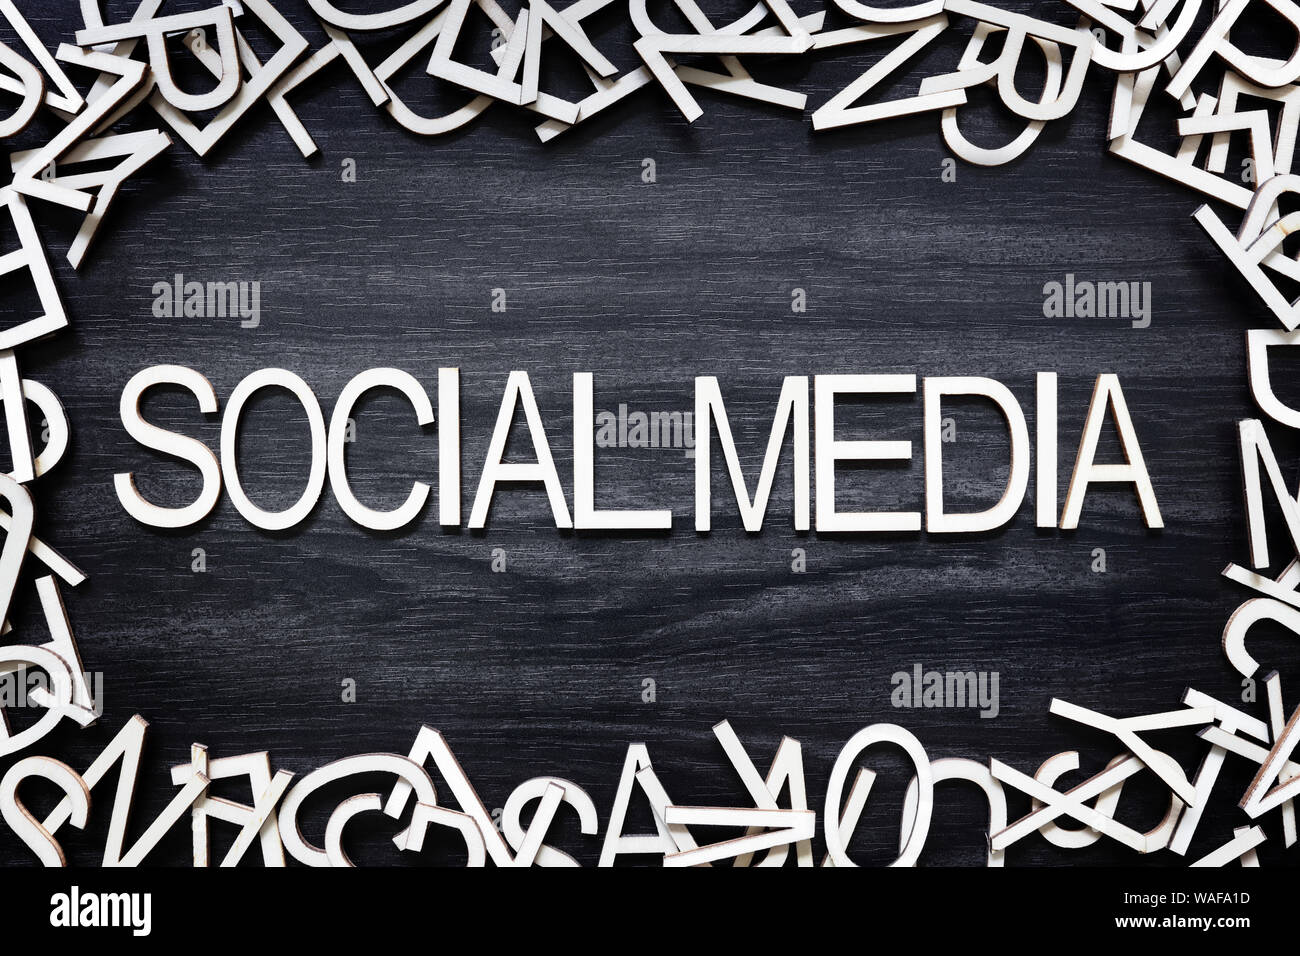 Social Media lettere di legno sul bordo nero Foto Stock